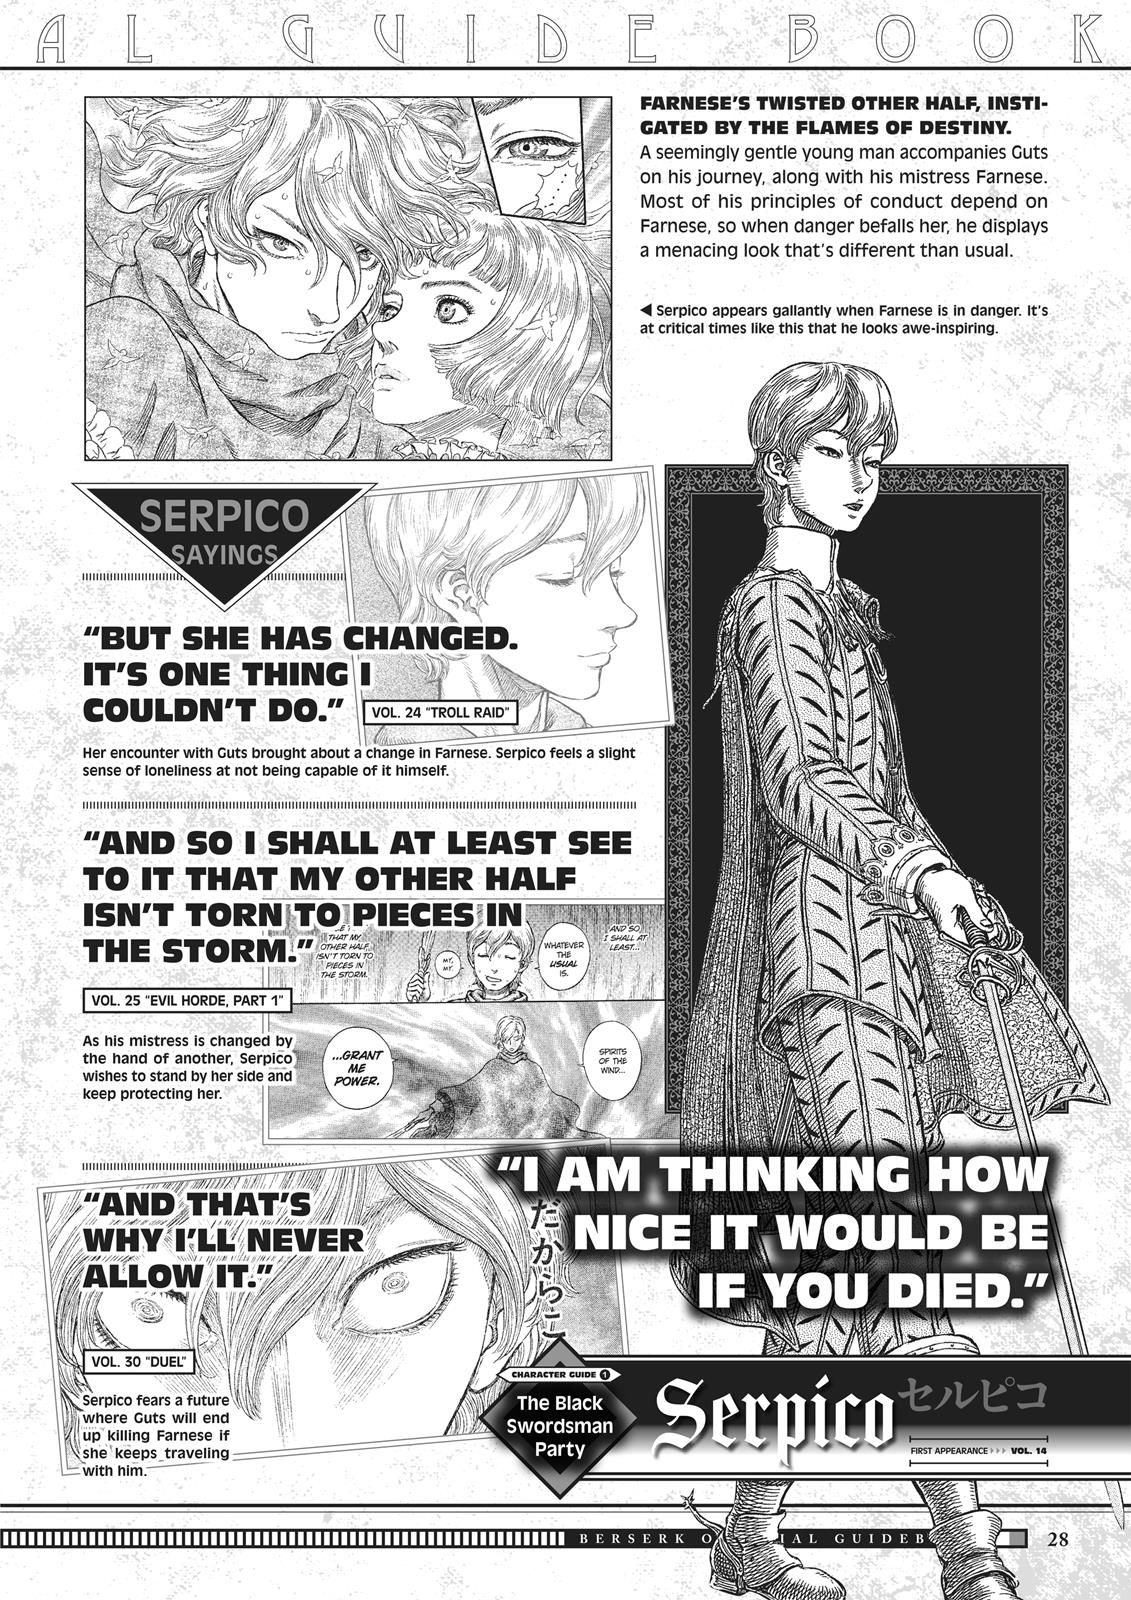 Berserk Manga Chapter 350.5 image 028